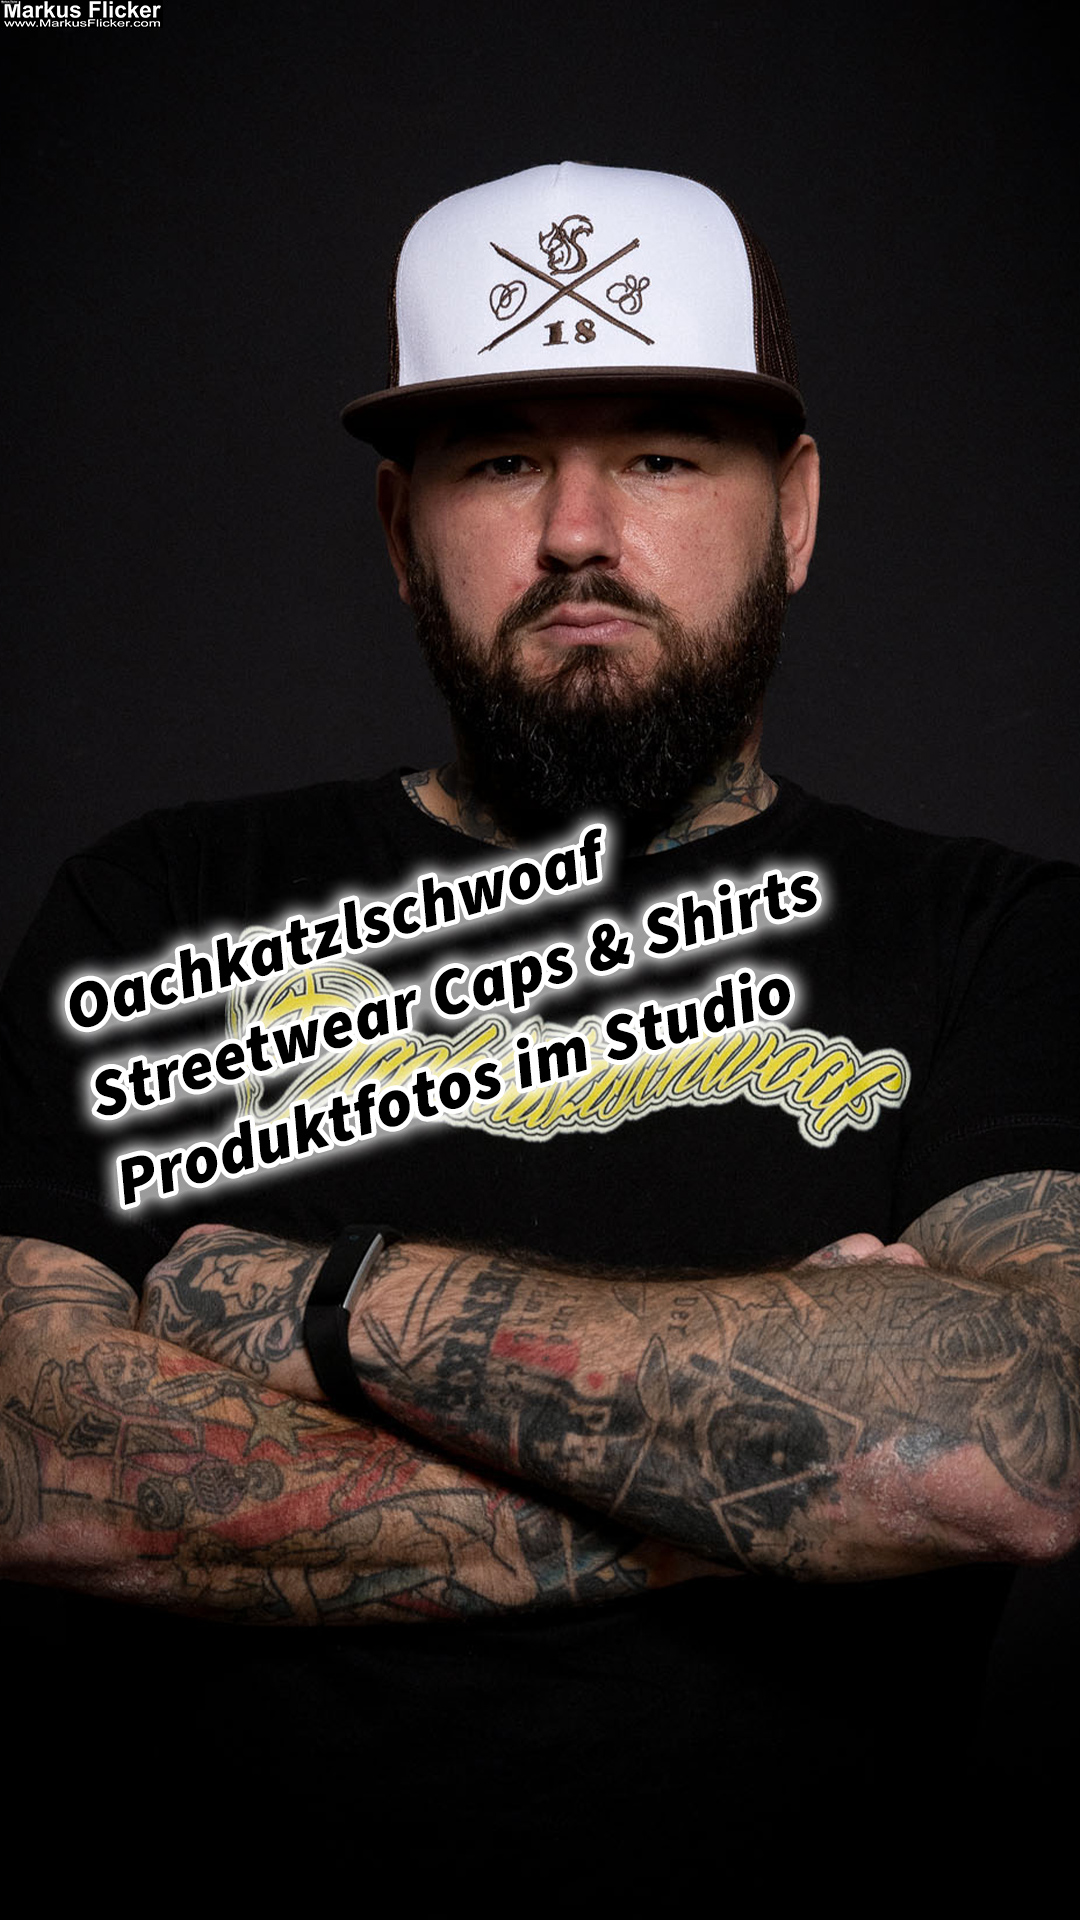 Oachkatzlschwoaf Streetwear Caps & Shirts Produktfotos im Studio